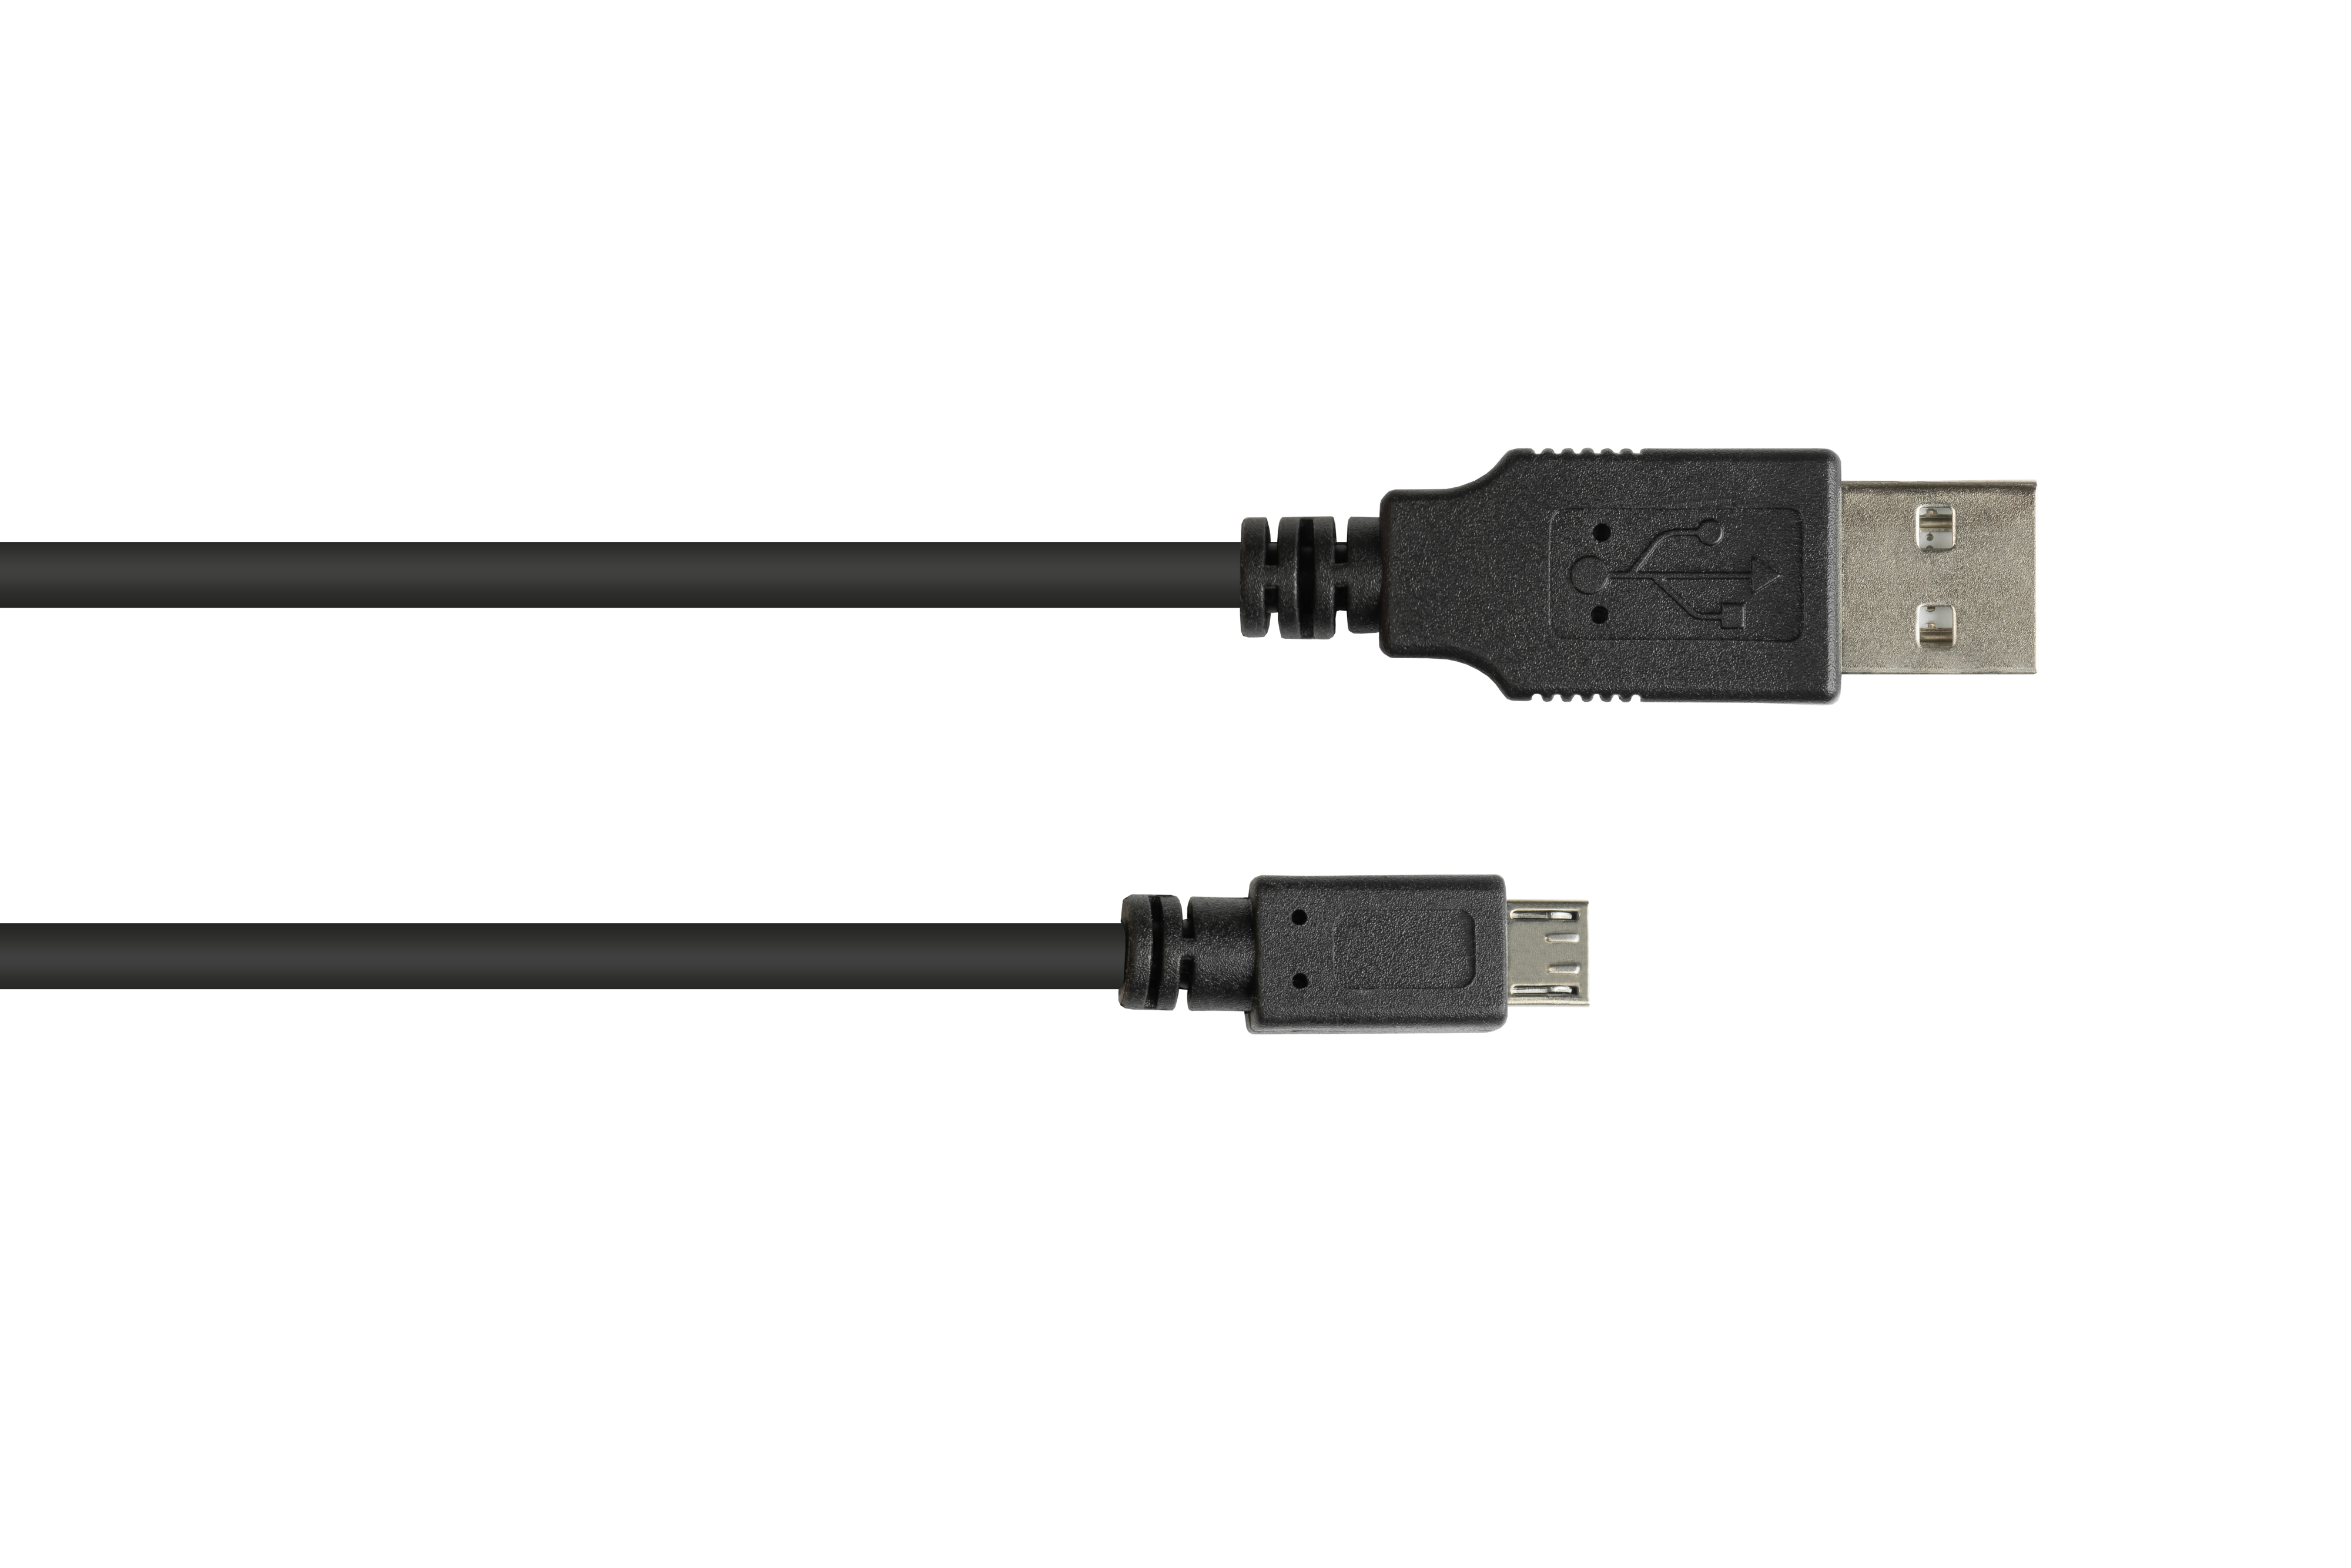 Stecker A CONNECTIONS Anschlusskabel USB Stecker an Micro GOOD schwarz B, 2.0